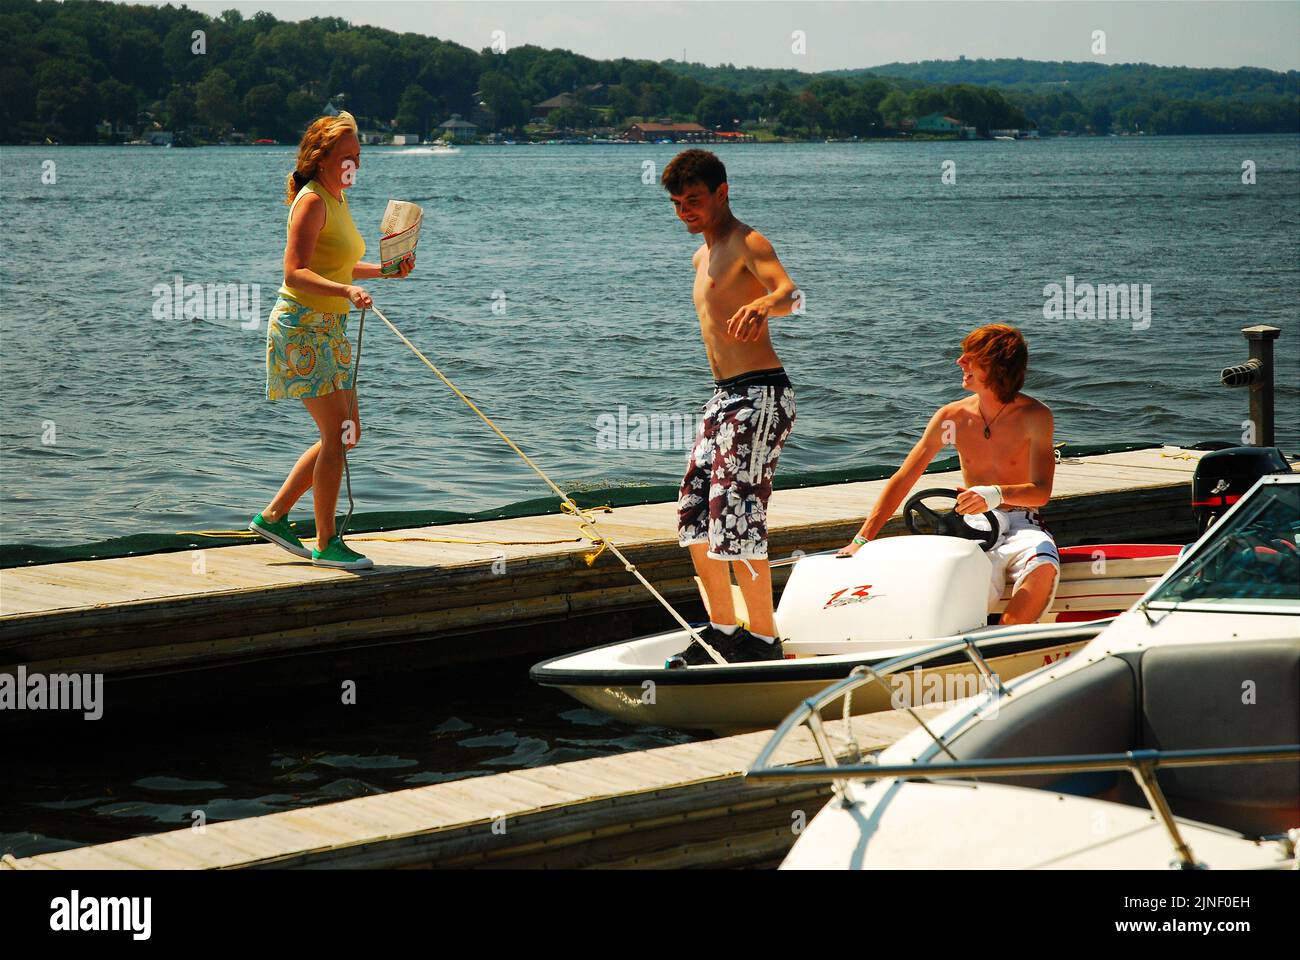 Eine Erwachsene Frau hilft zwei Jungen im Teenageralter, ihr kleines Boot zum Dock zu bringen, um an einem schönen Sommerurlaubs-Tag auf dem See zu binden Stockfoto